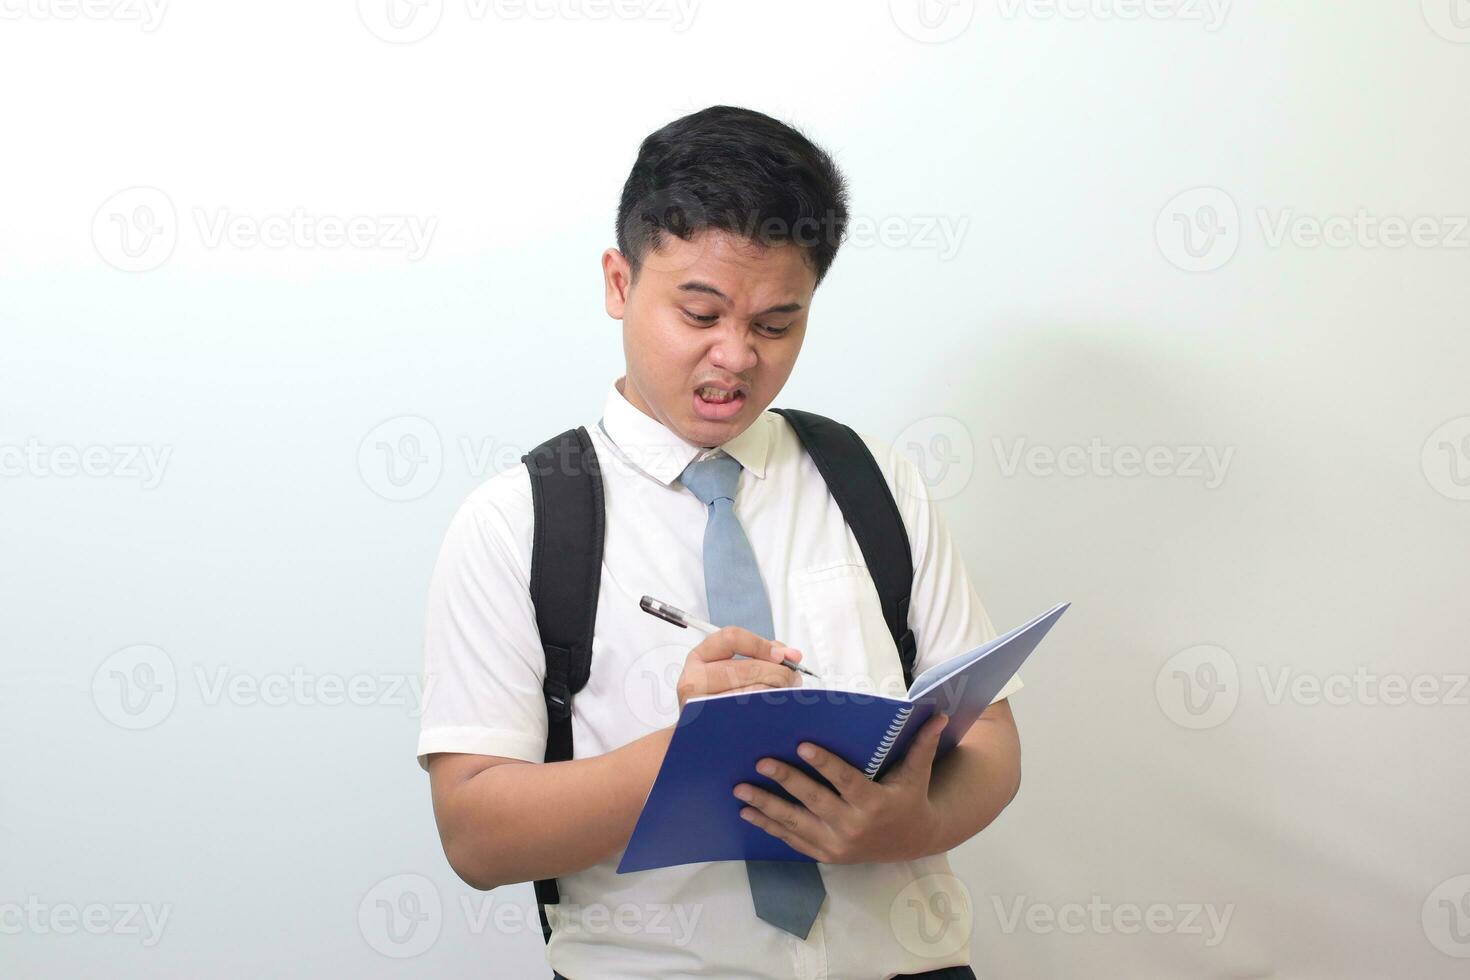 indonesiska senior hög skola studerande bär vit skjorta enhetlig med grå slips skrivning på notera bok använder sig av penna med irriterad och frustrerad uttryck. isolerat bild på vit bakgrund foto